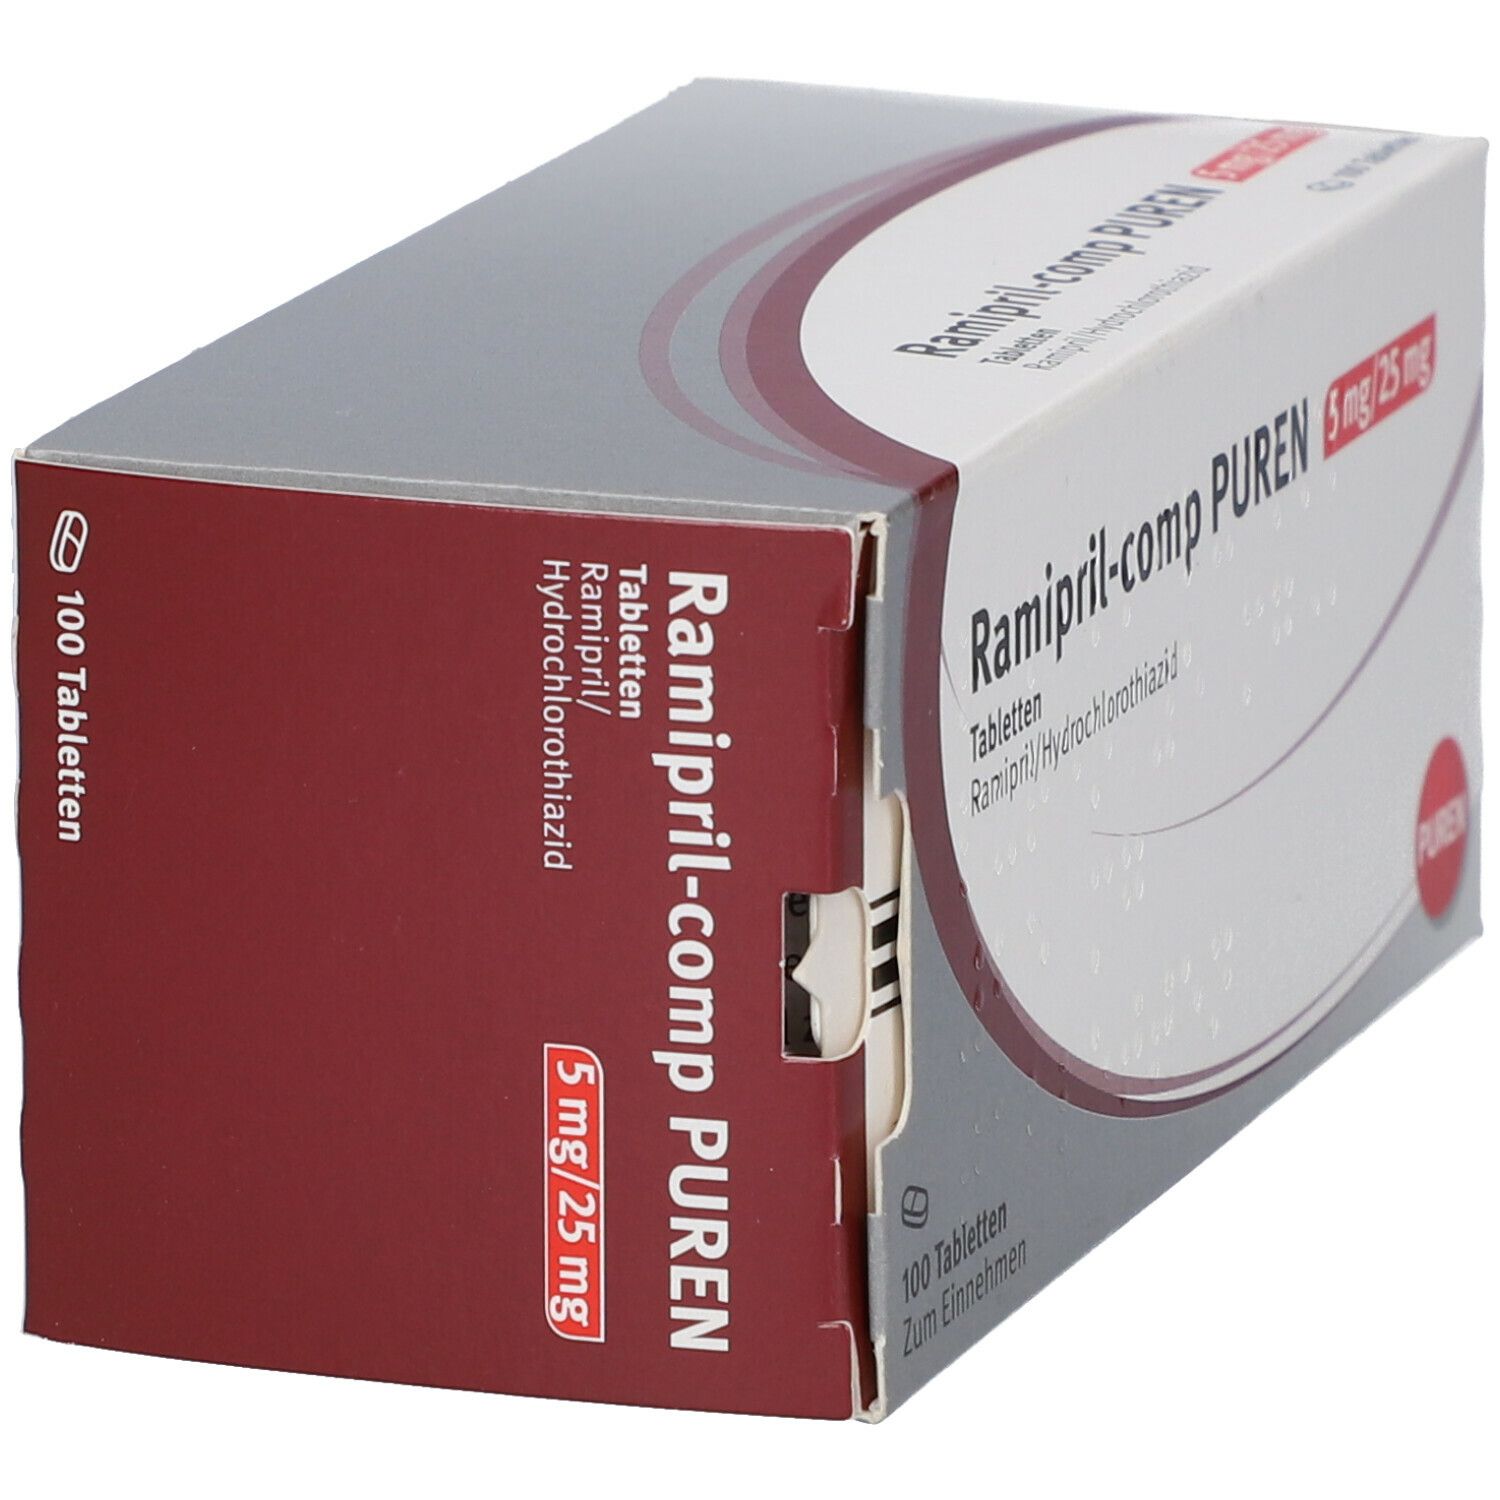 Ramipril-comp PUREN 5 mg/25 mg